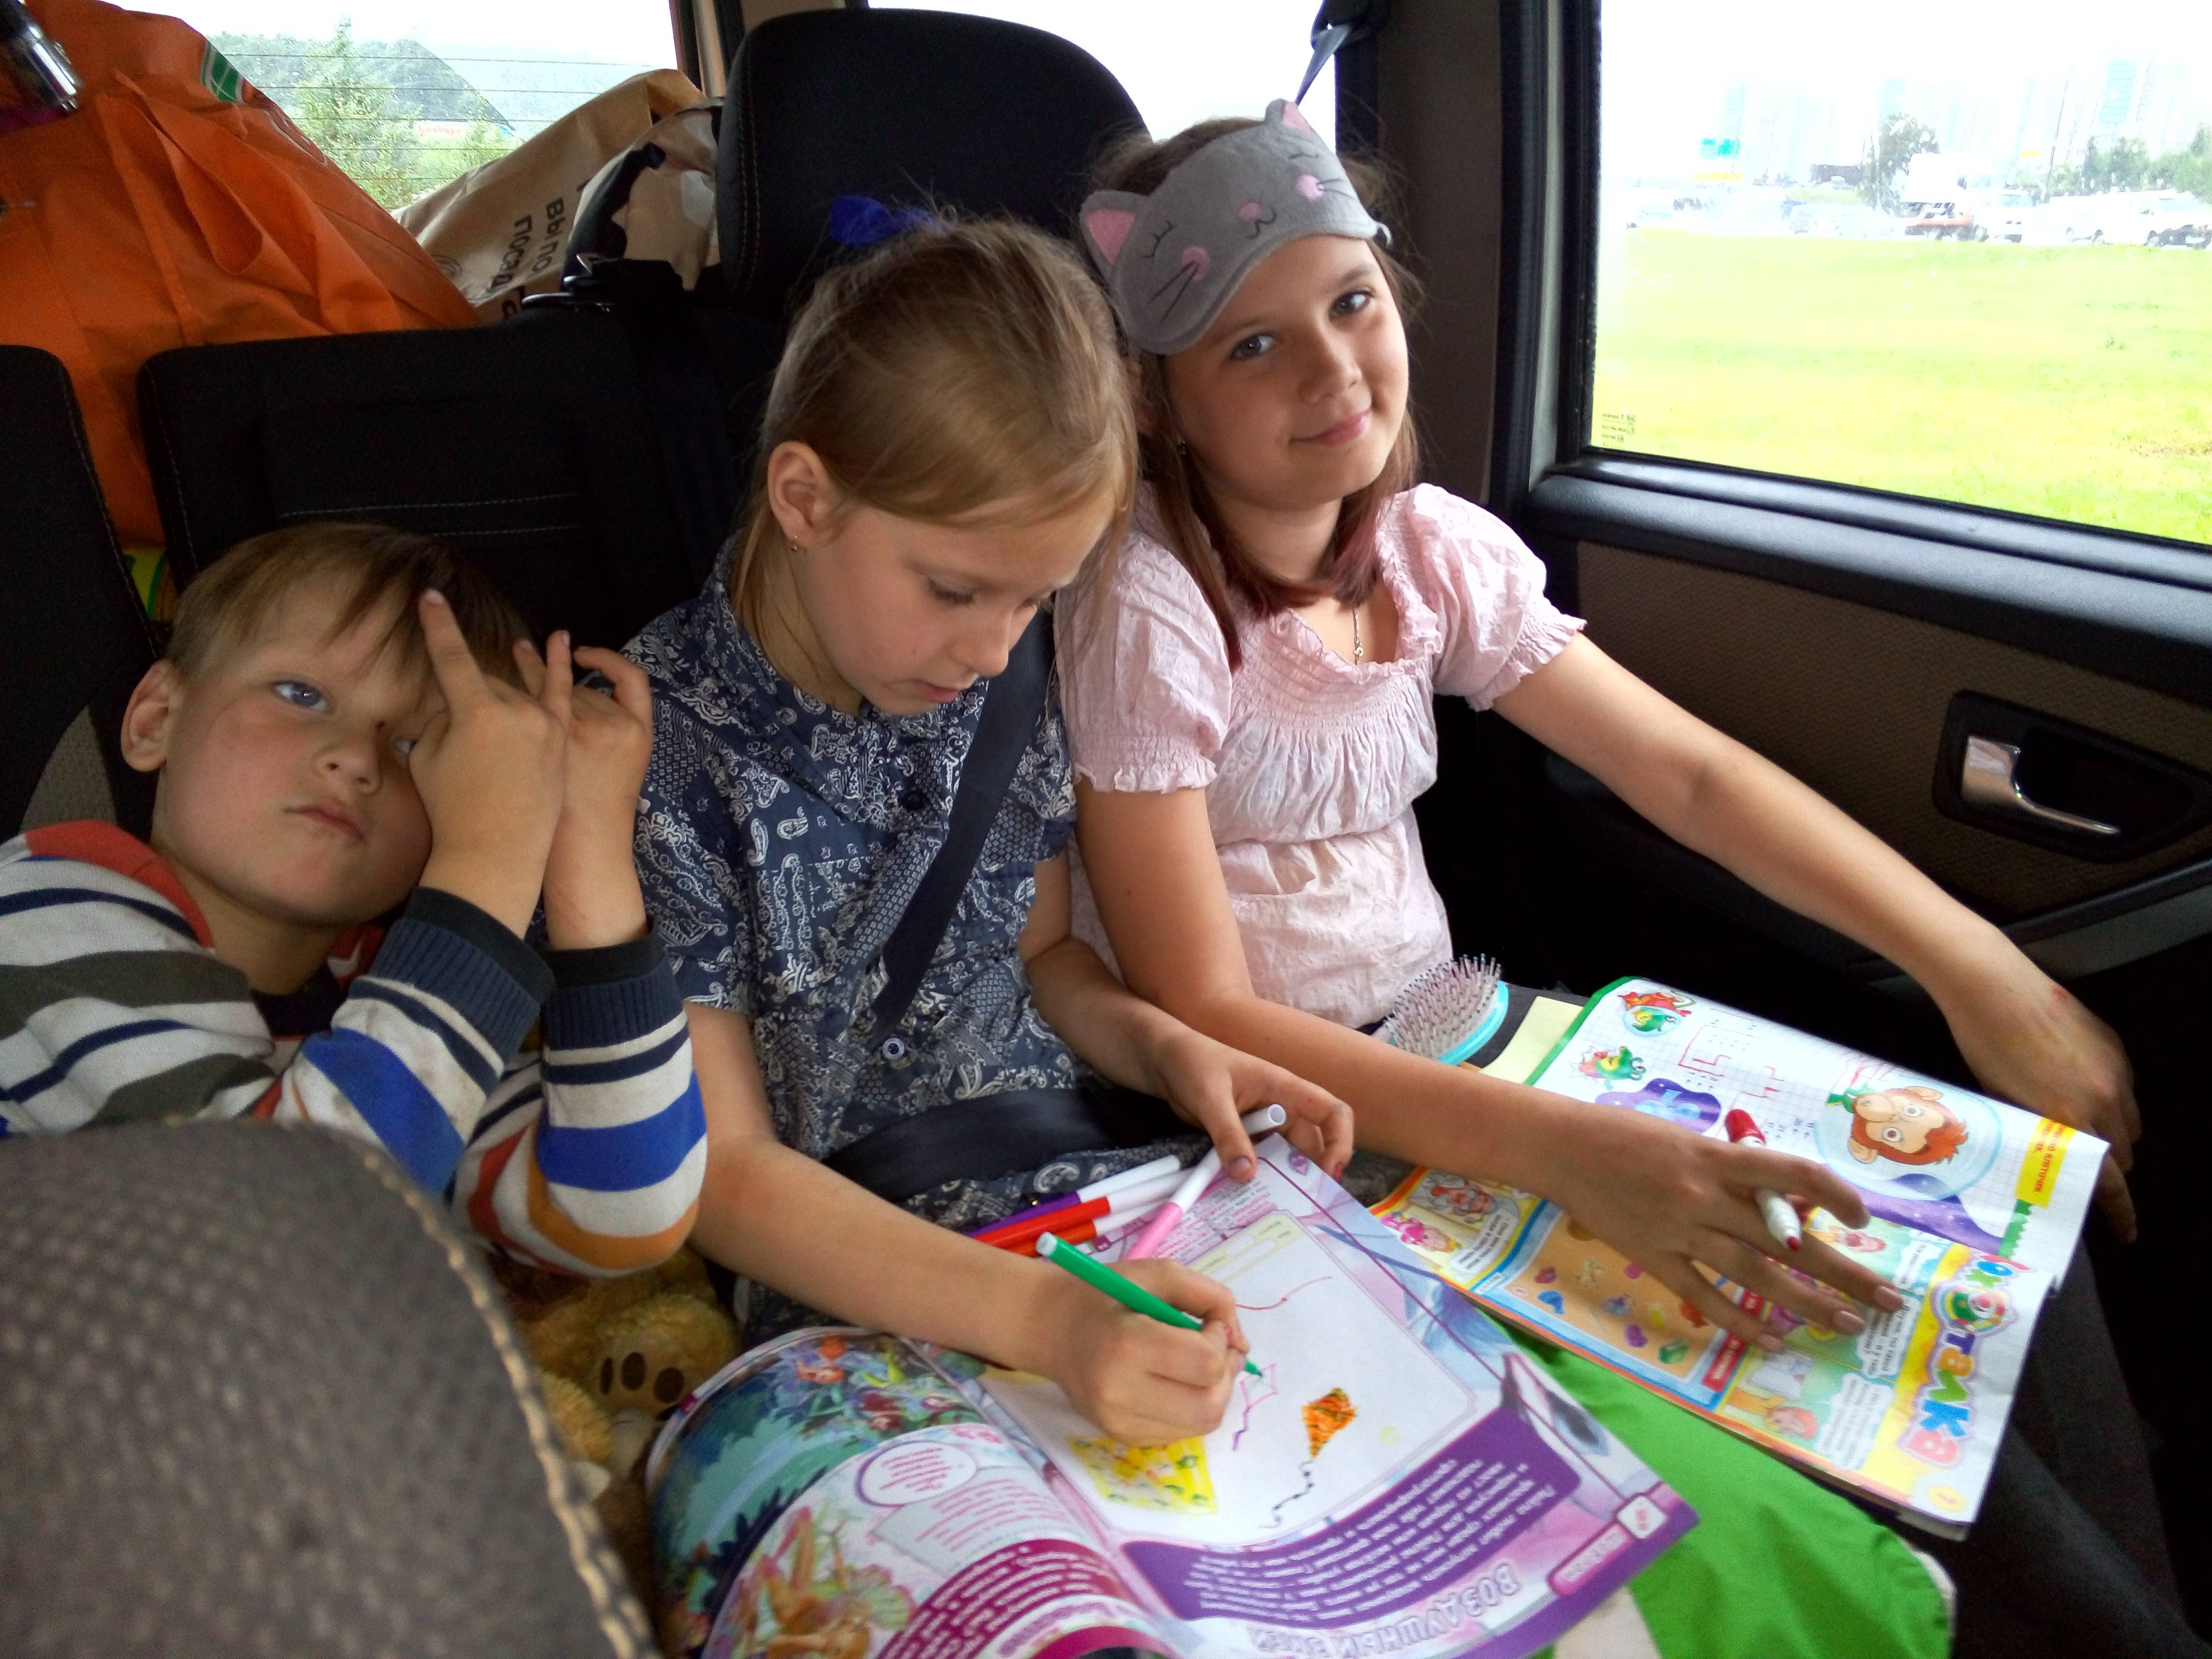 Развлечения в дорогу. Поезда для детей. Путешествие с детьми на поезде. Игры в дорогу для детей. Детям в дорогу развлечения.